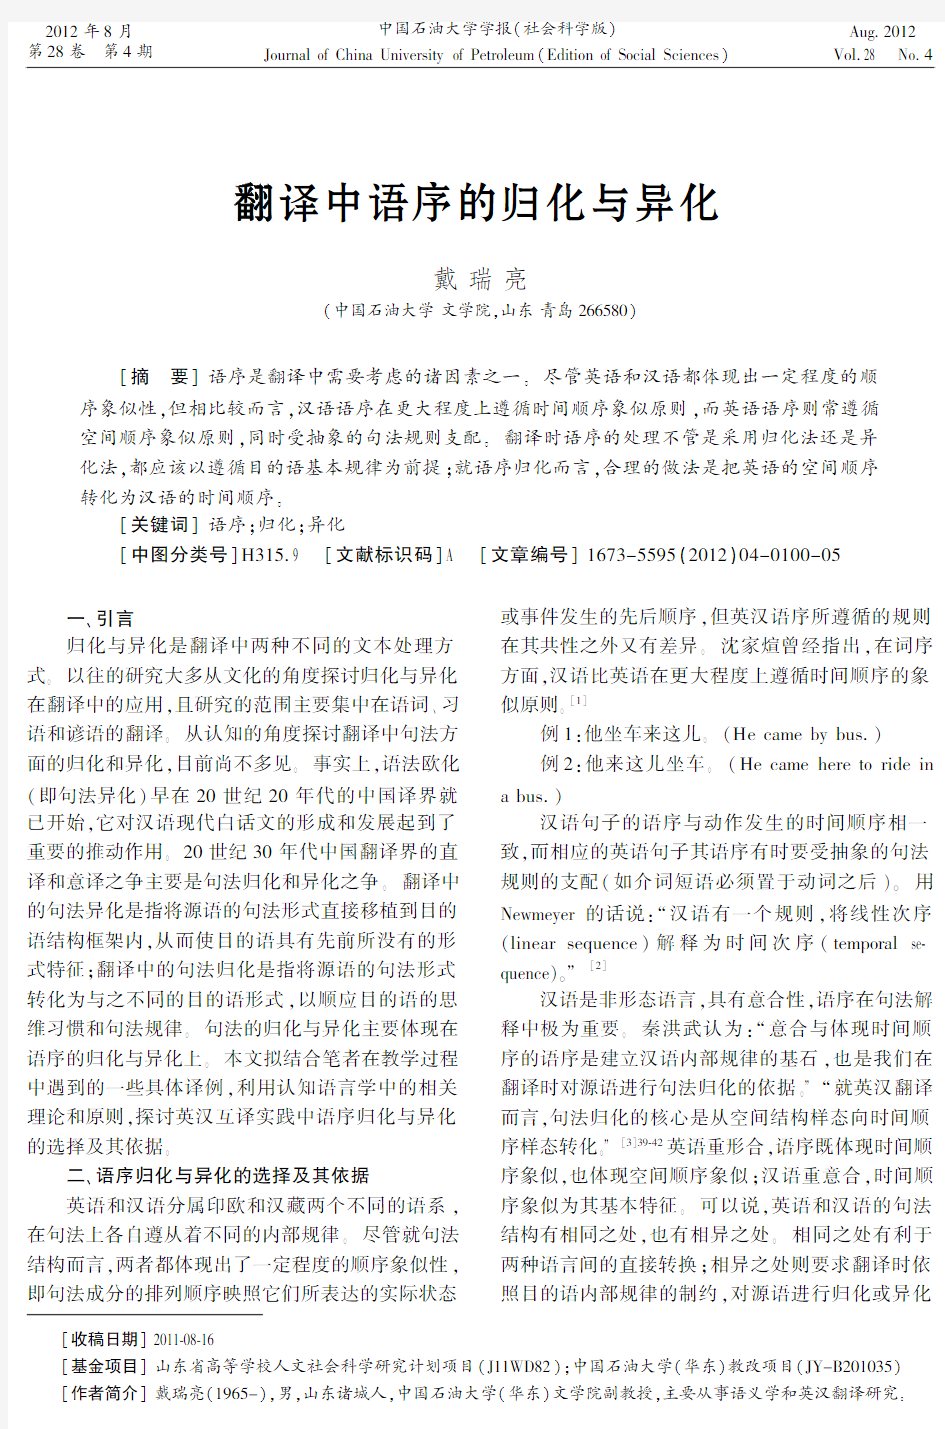 翻译中语序的归化与异化-中国石油大学学报-中国石油大学华东